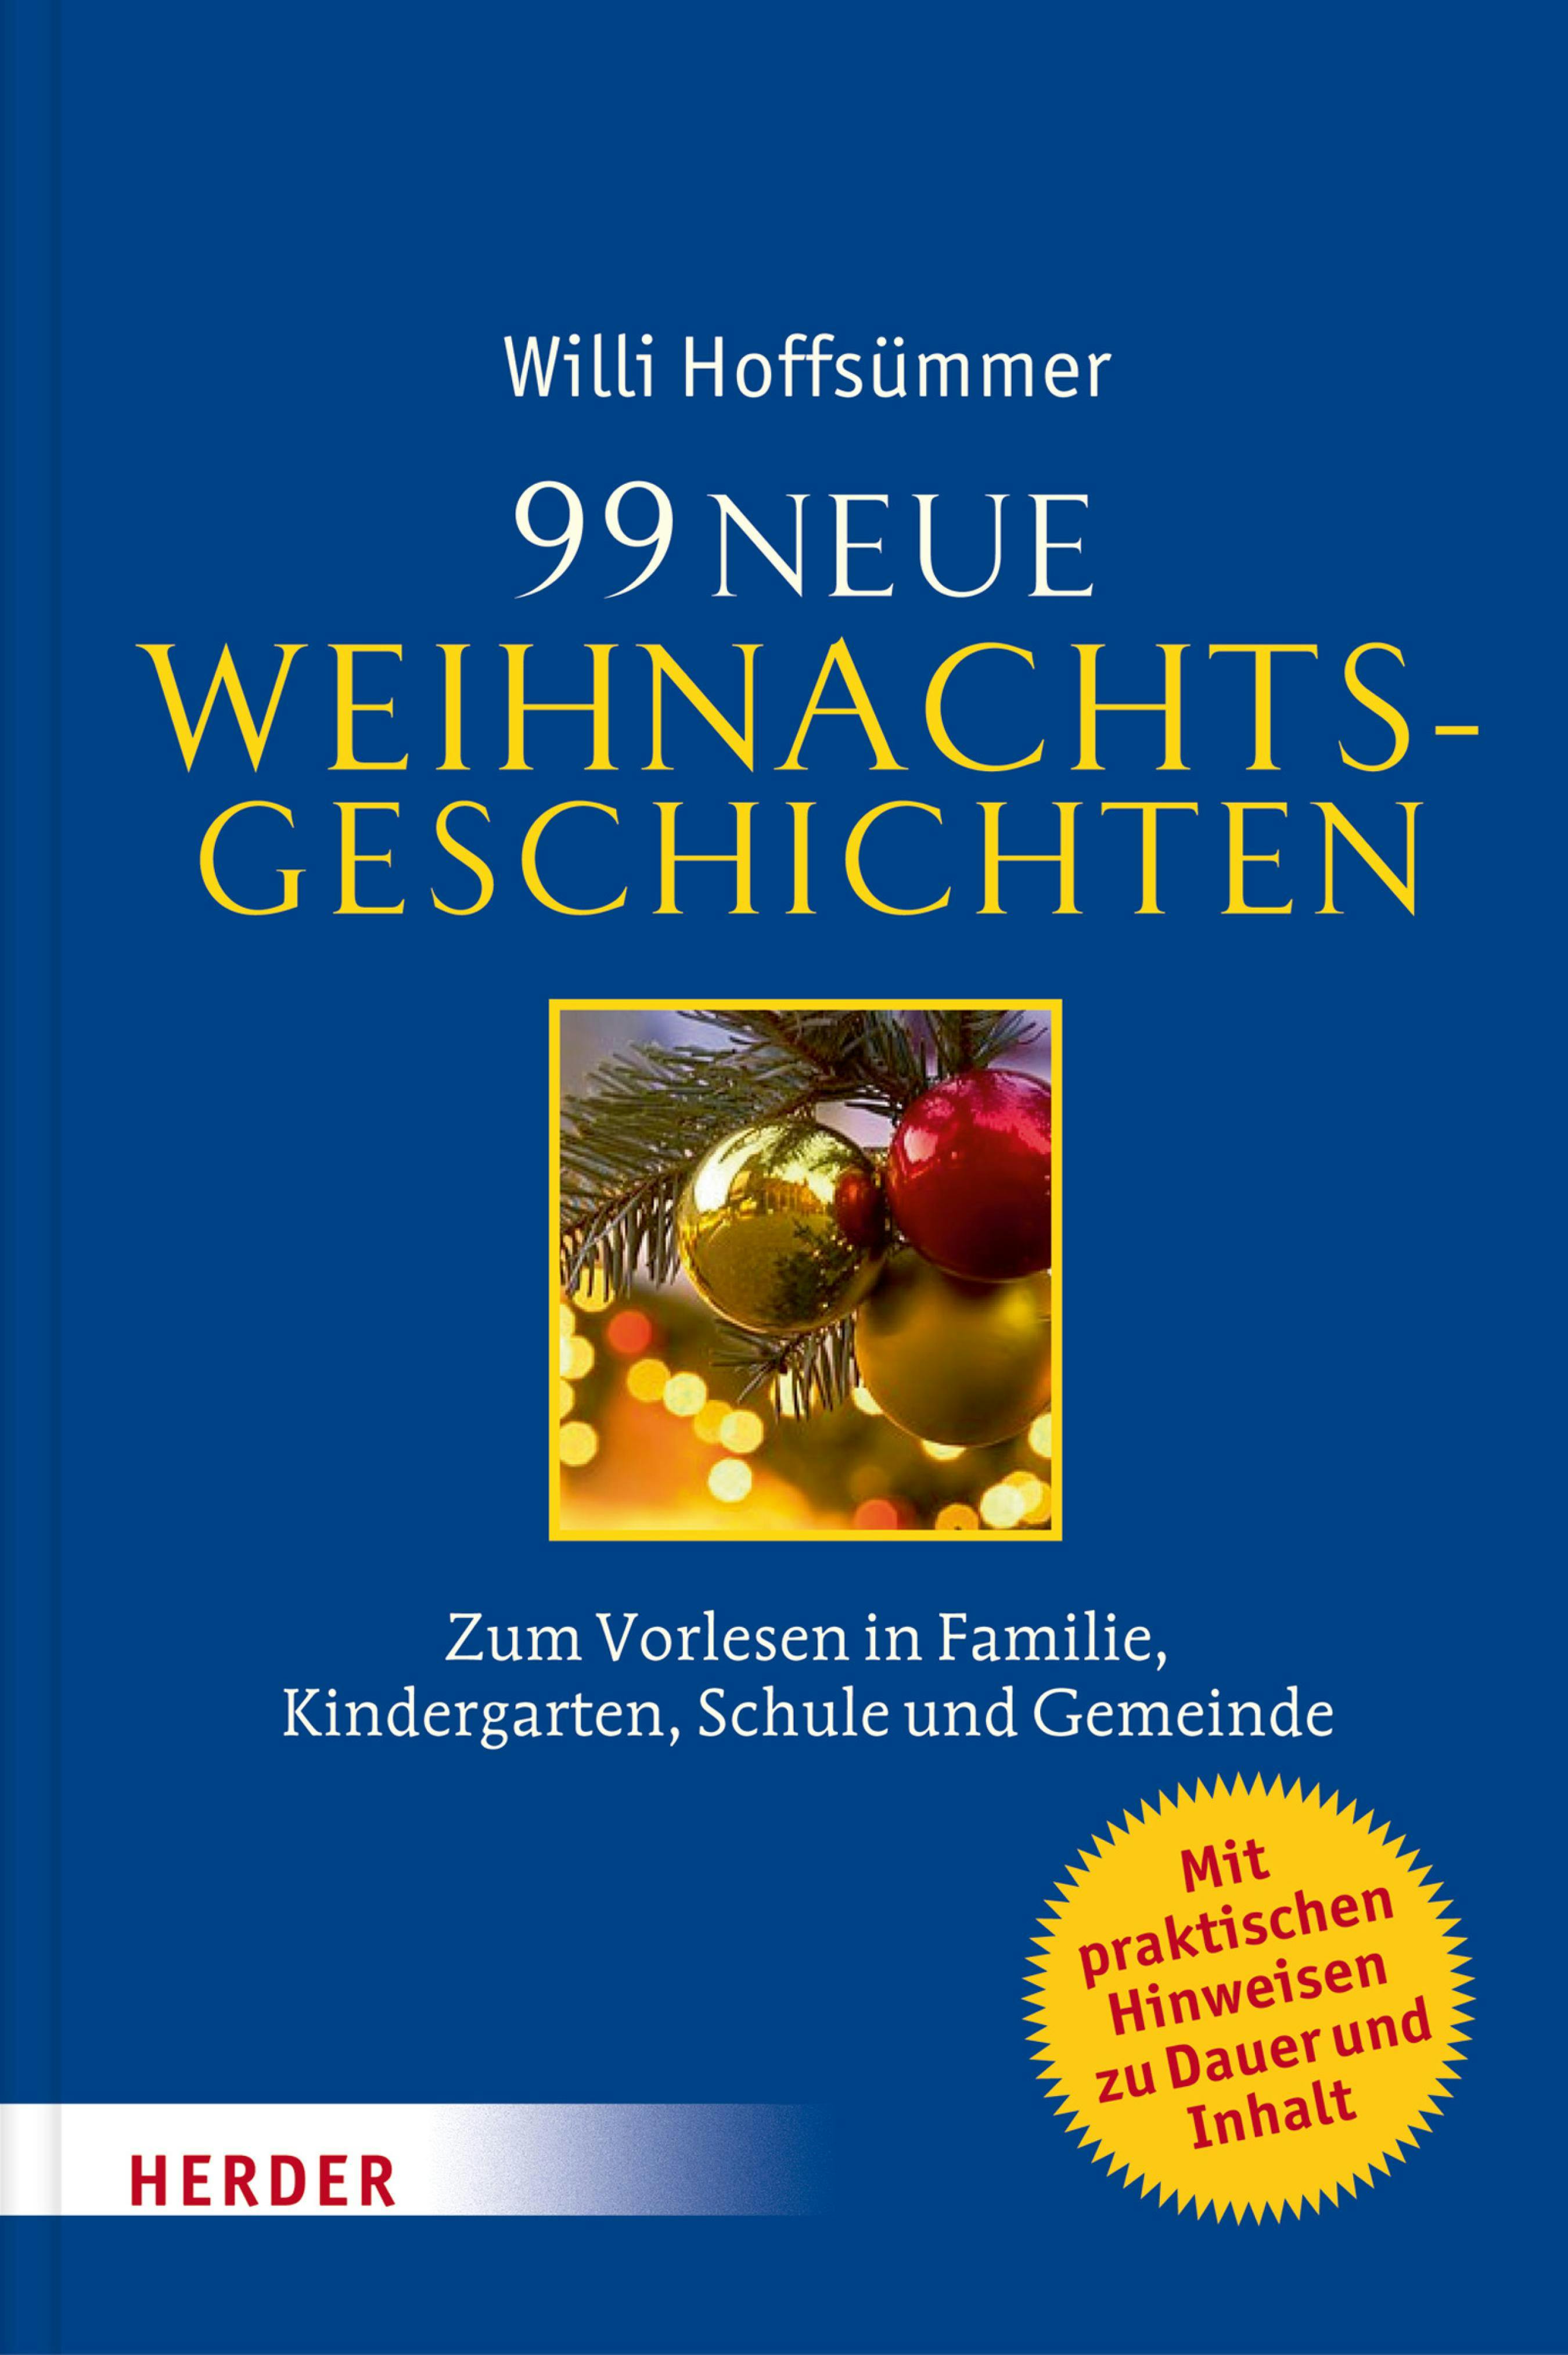 99 neue Weihnachtsgeschichten: Zum Vorlesen in Familie, Kindergarten, Schule und Gemeinde - Willi Hoffsümmer